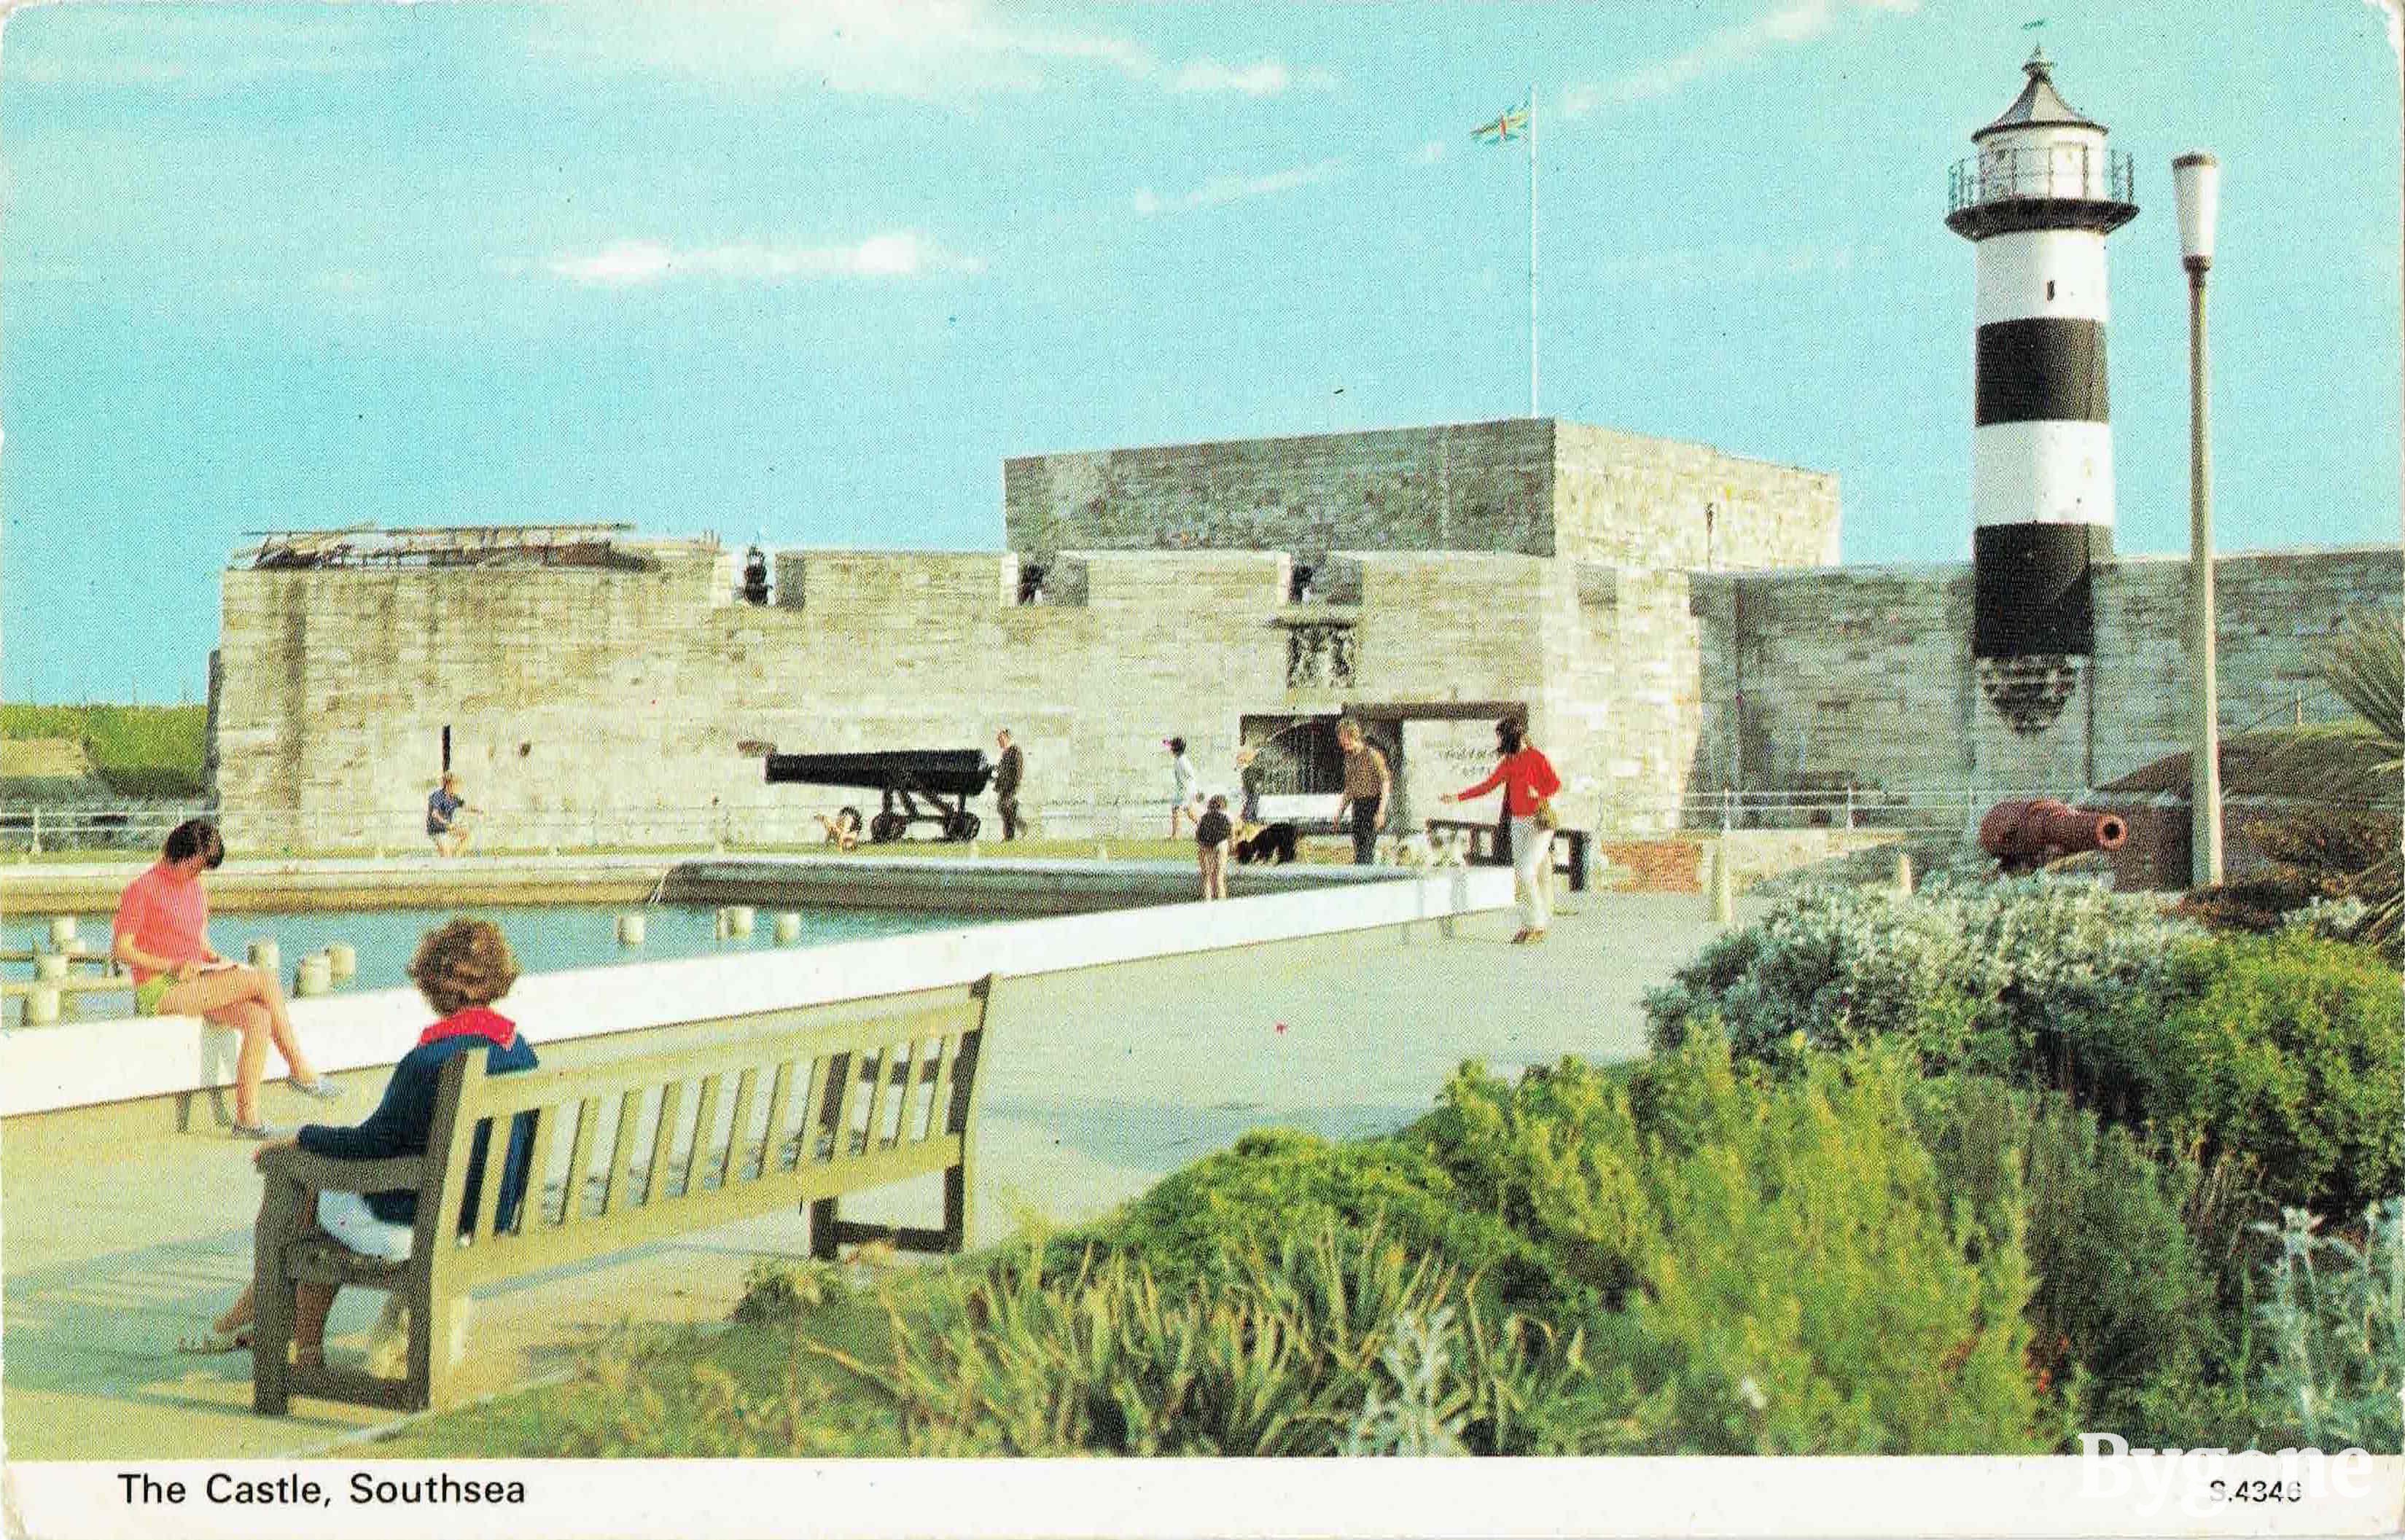 The Castle, Southsea, 1973